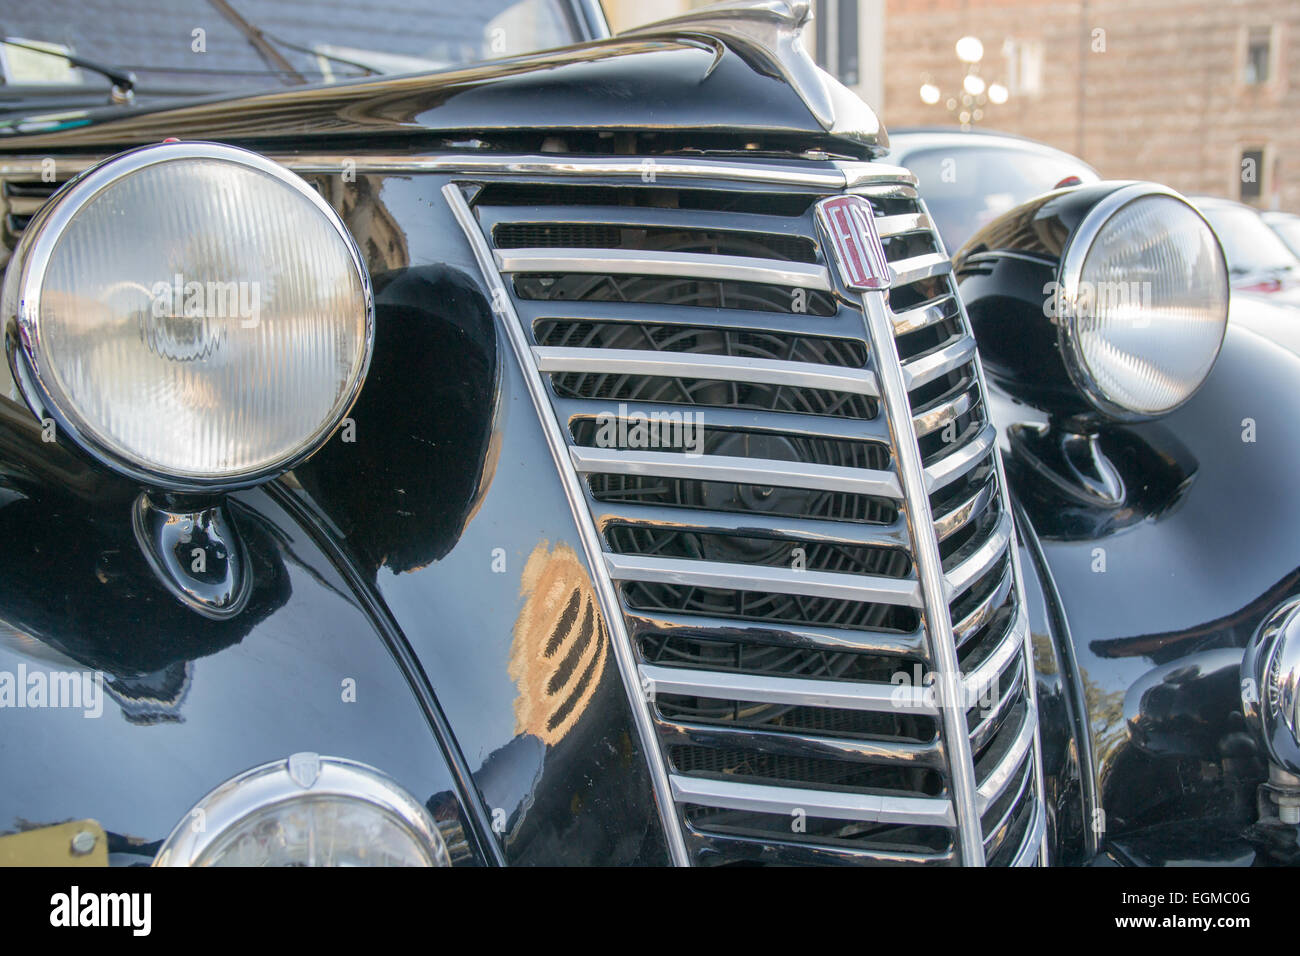 VERONA, Italia - 6 gennaio: Vetture d'epoca. Benaco Classic Automobile Club organizza un raduno chiamato 'strega del poliziotto' o Foto Stock